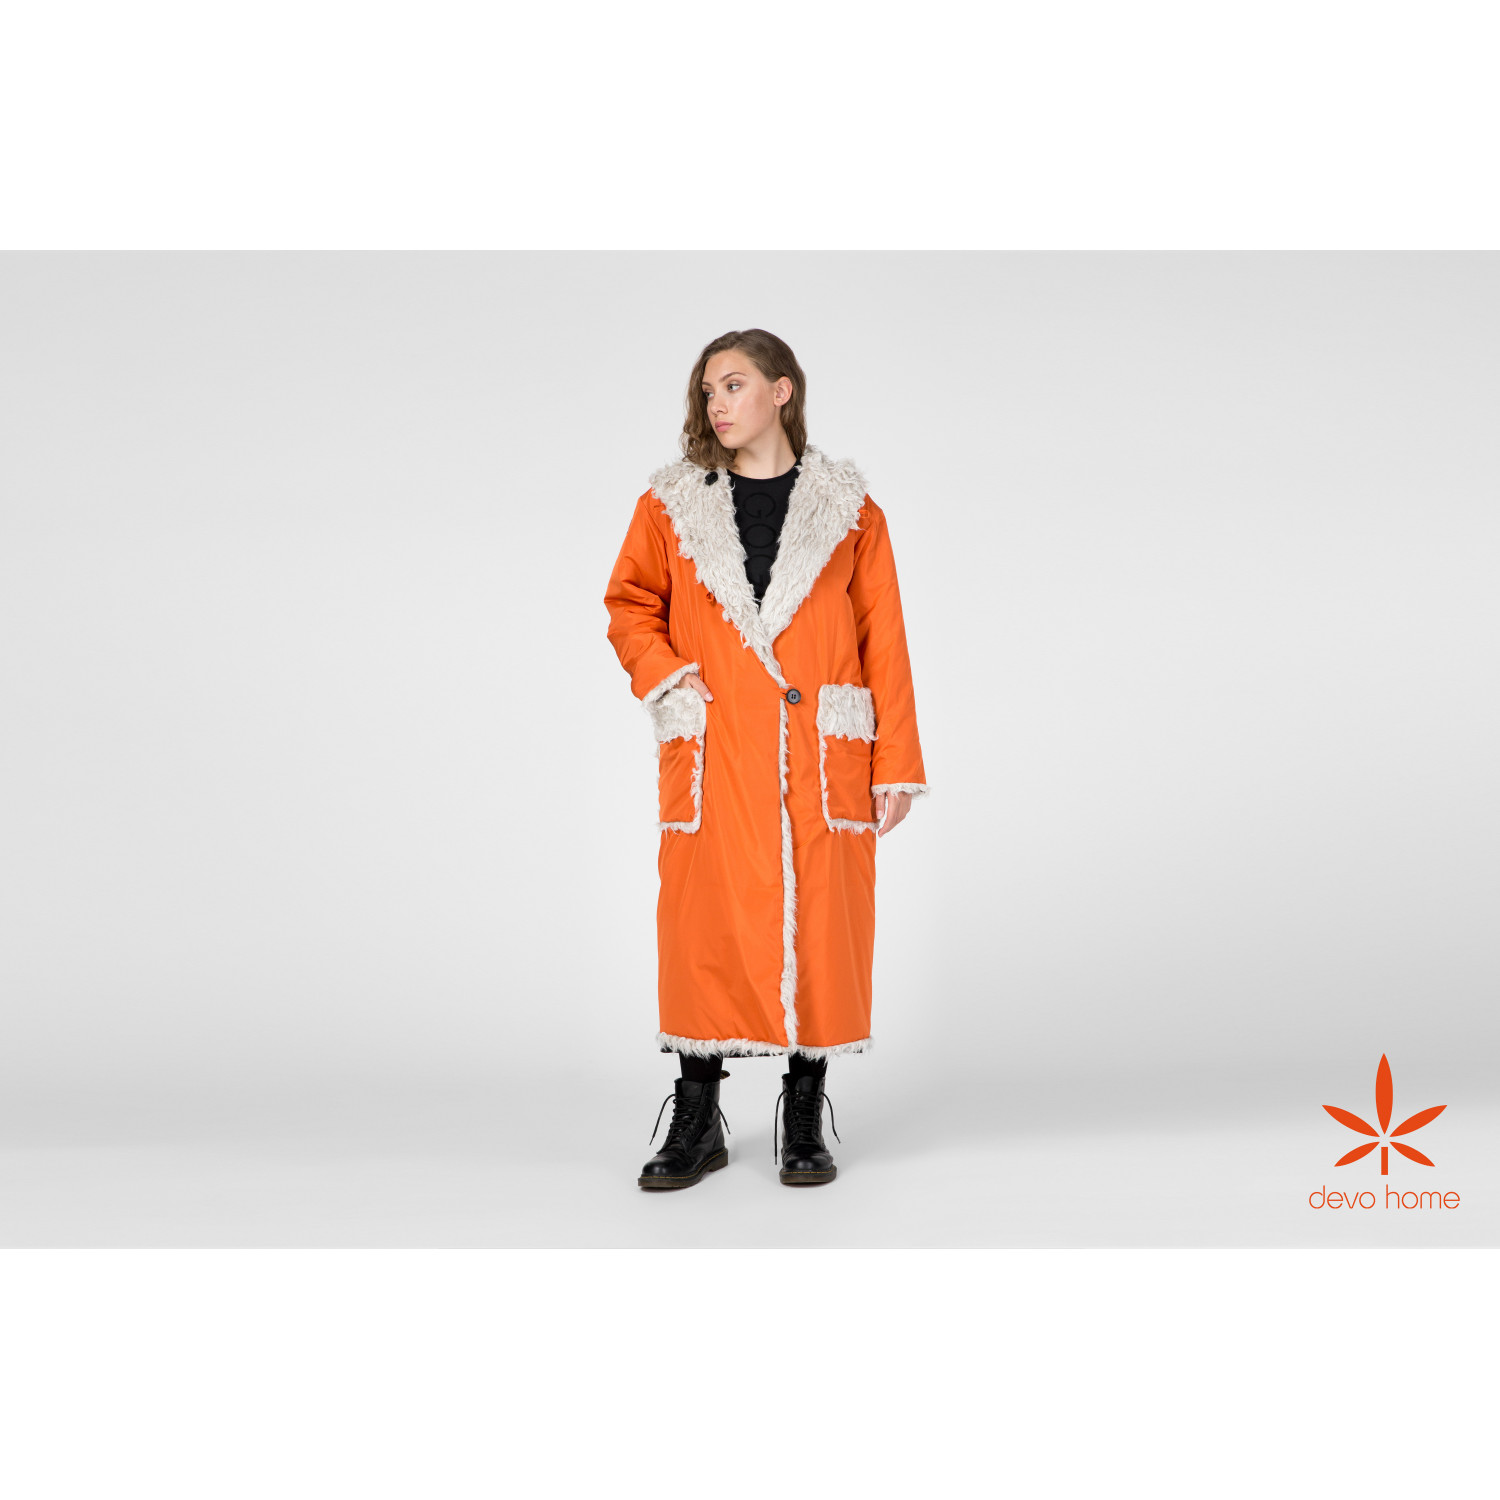 Hemp fur coat, orange